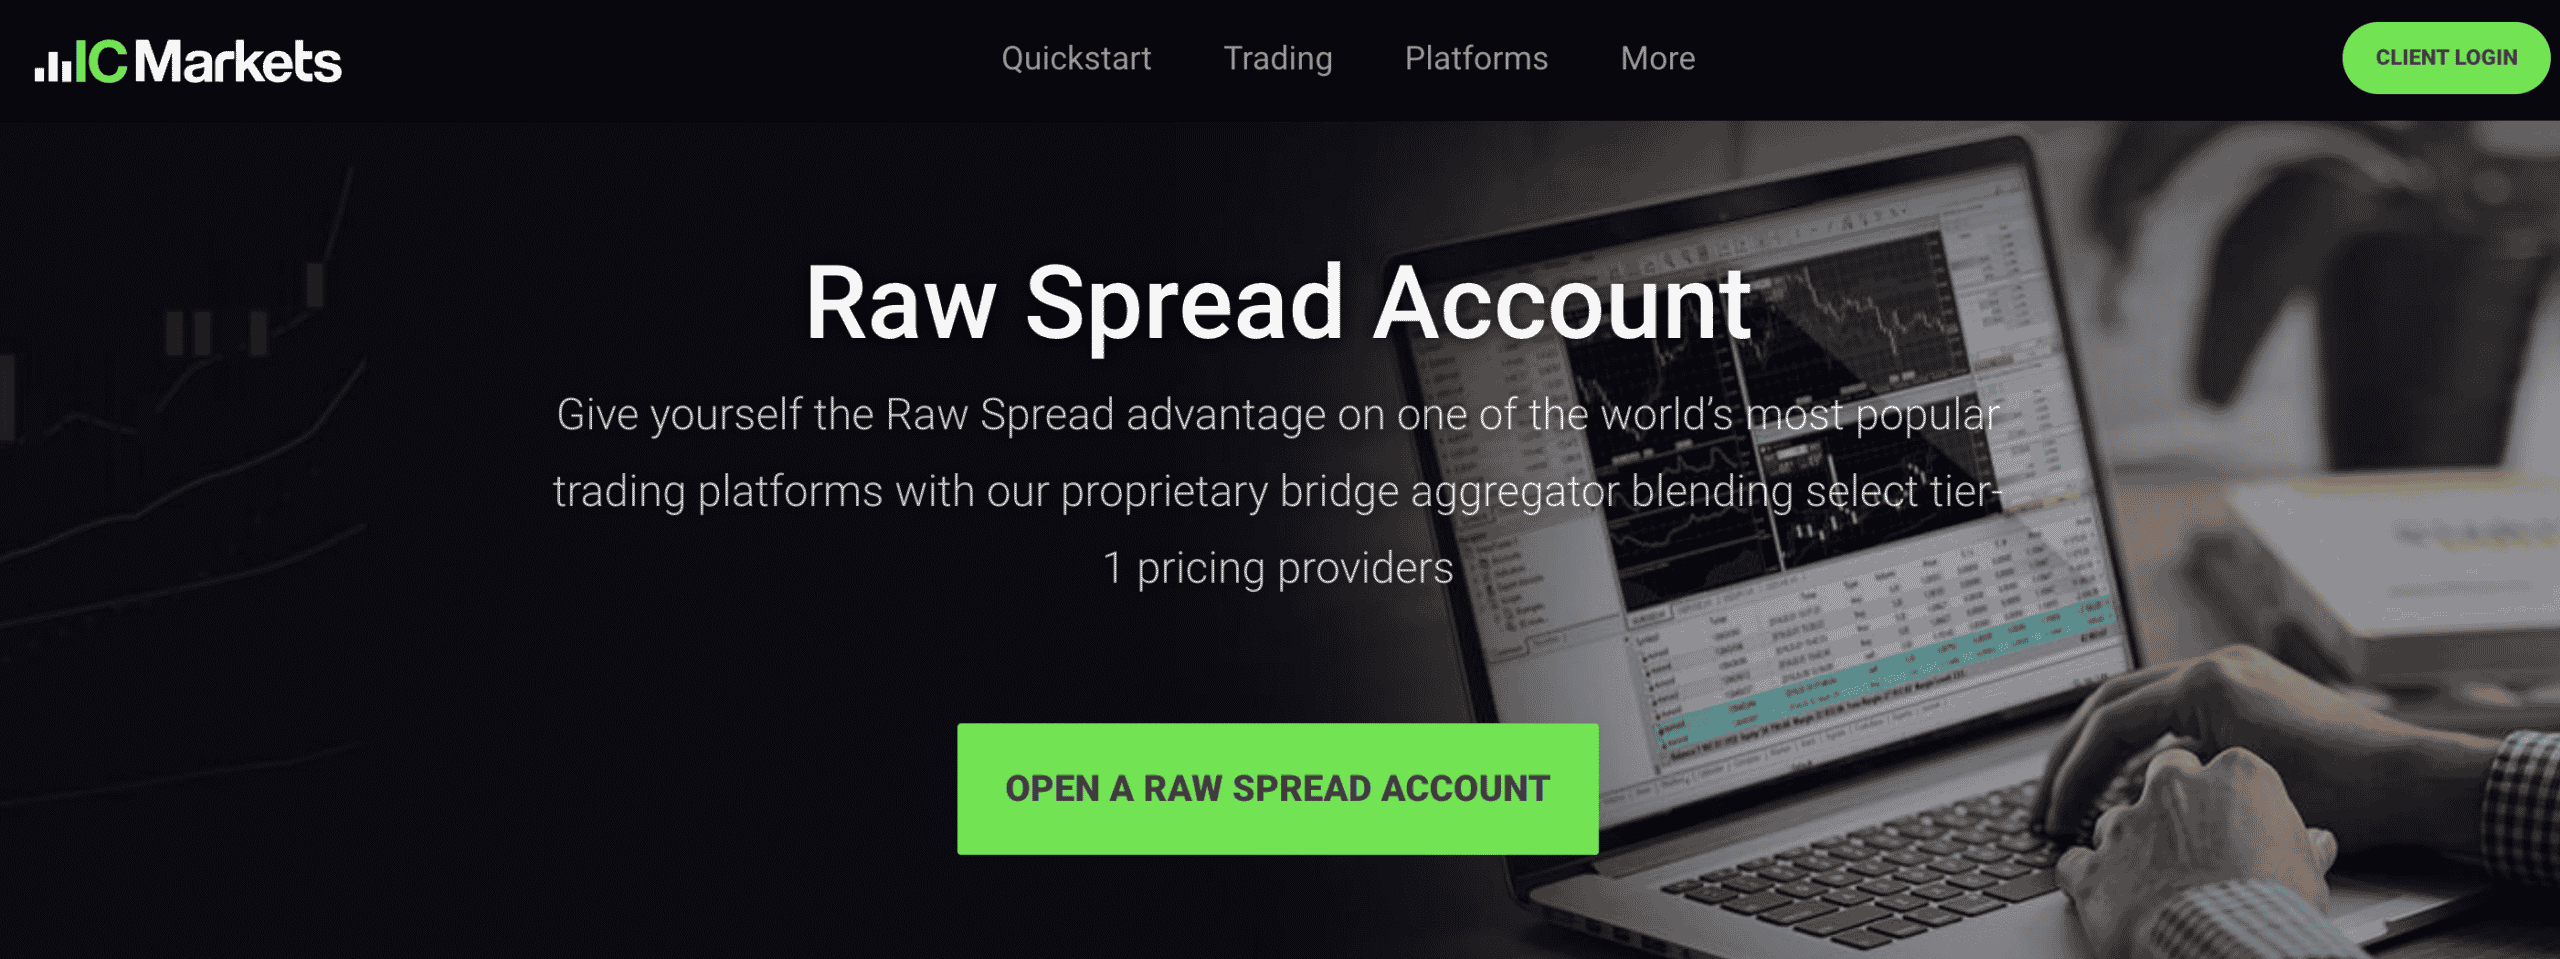 Raw Spread Account